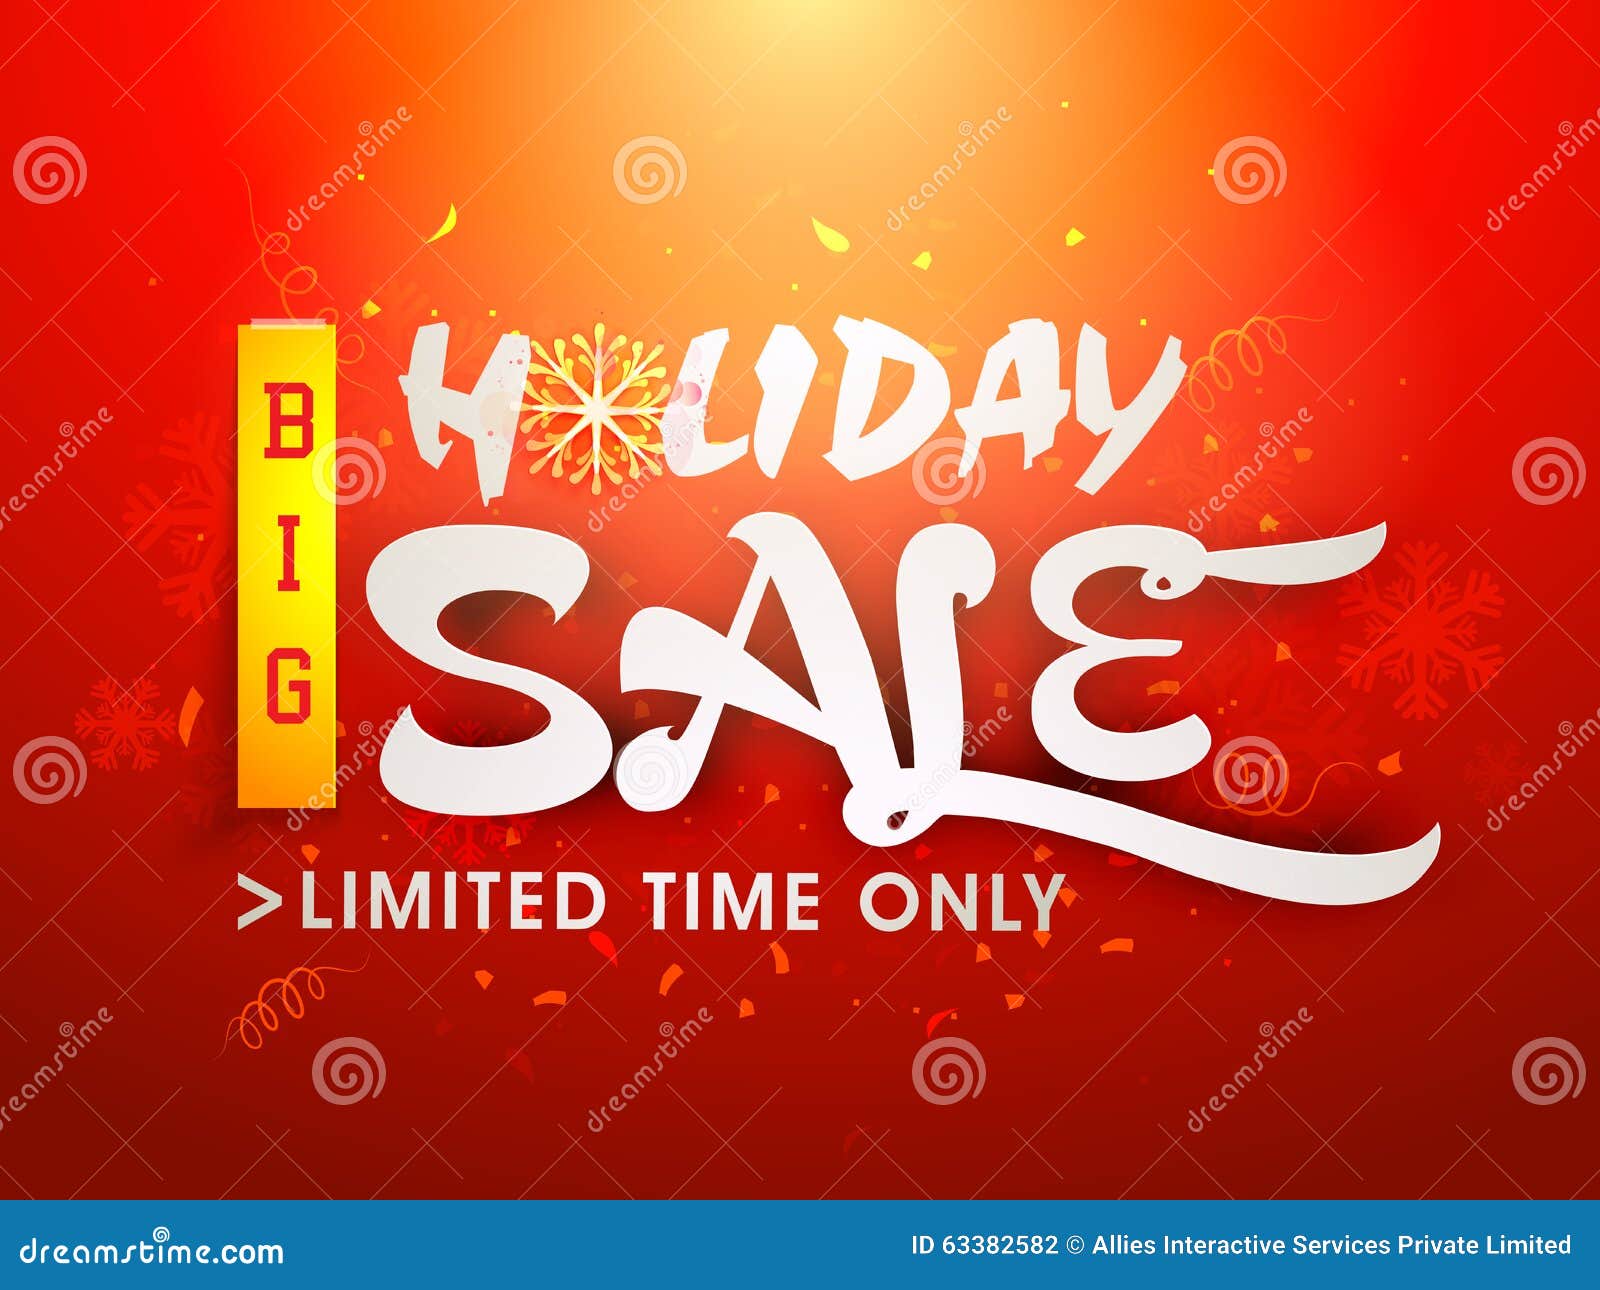 holiday-sale-poster-banner-or-flyer-design-stock-illustration